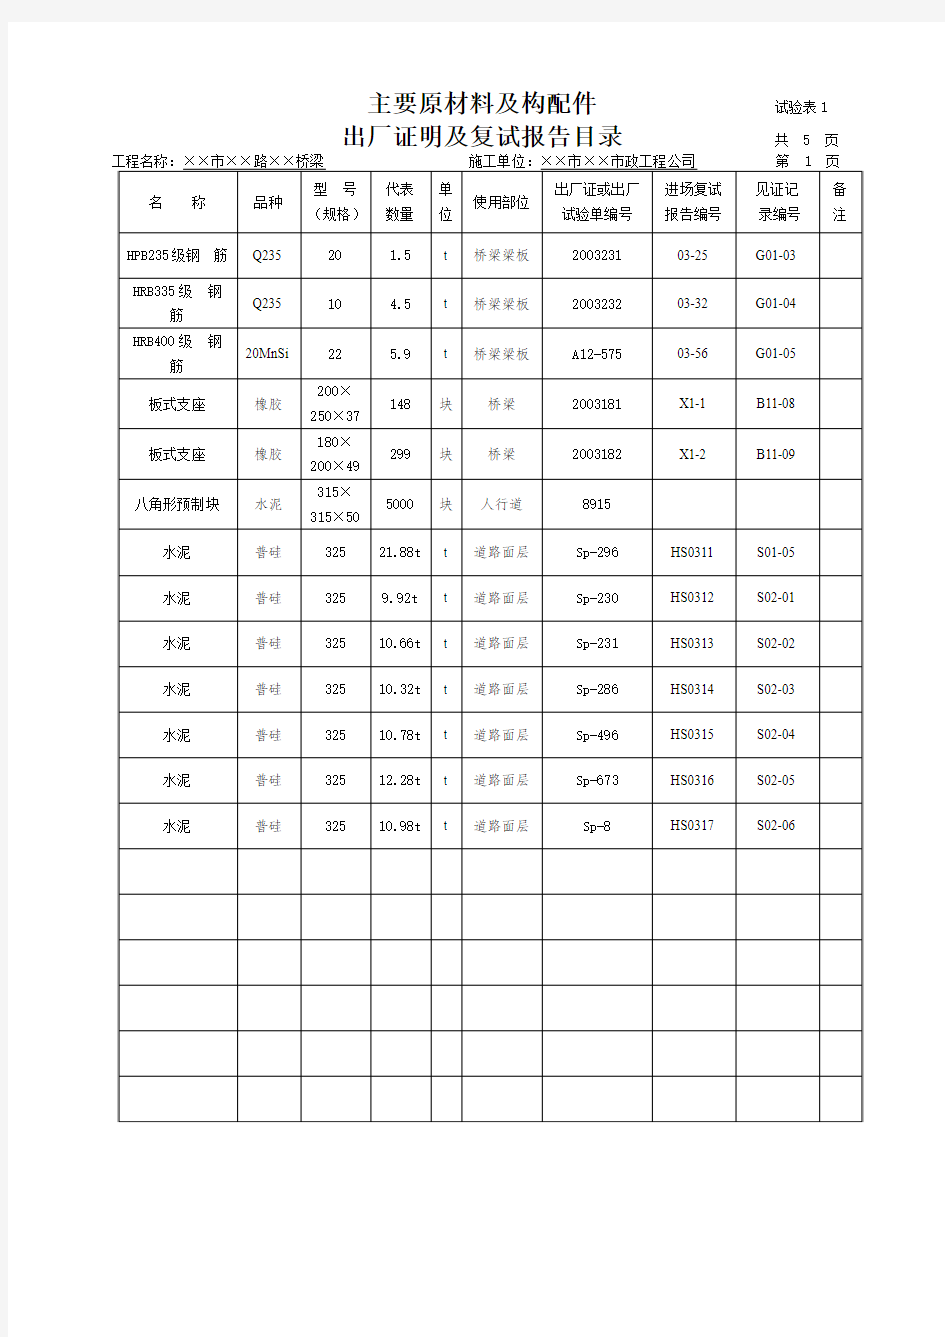 江苏地区市政工程资料标准表格填写范例--试验表